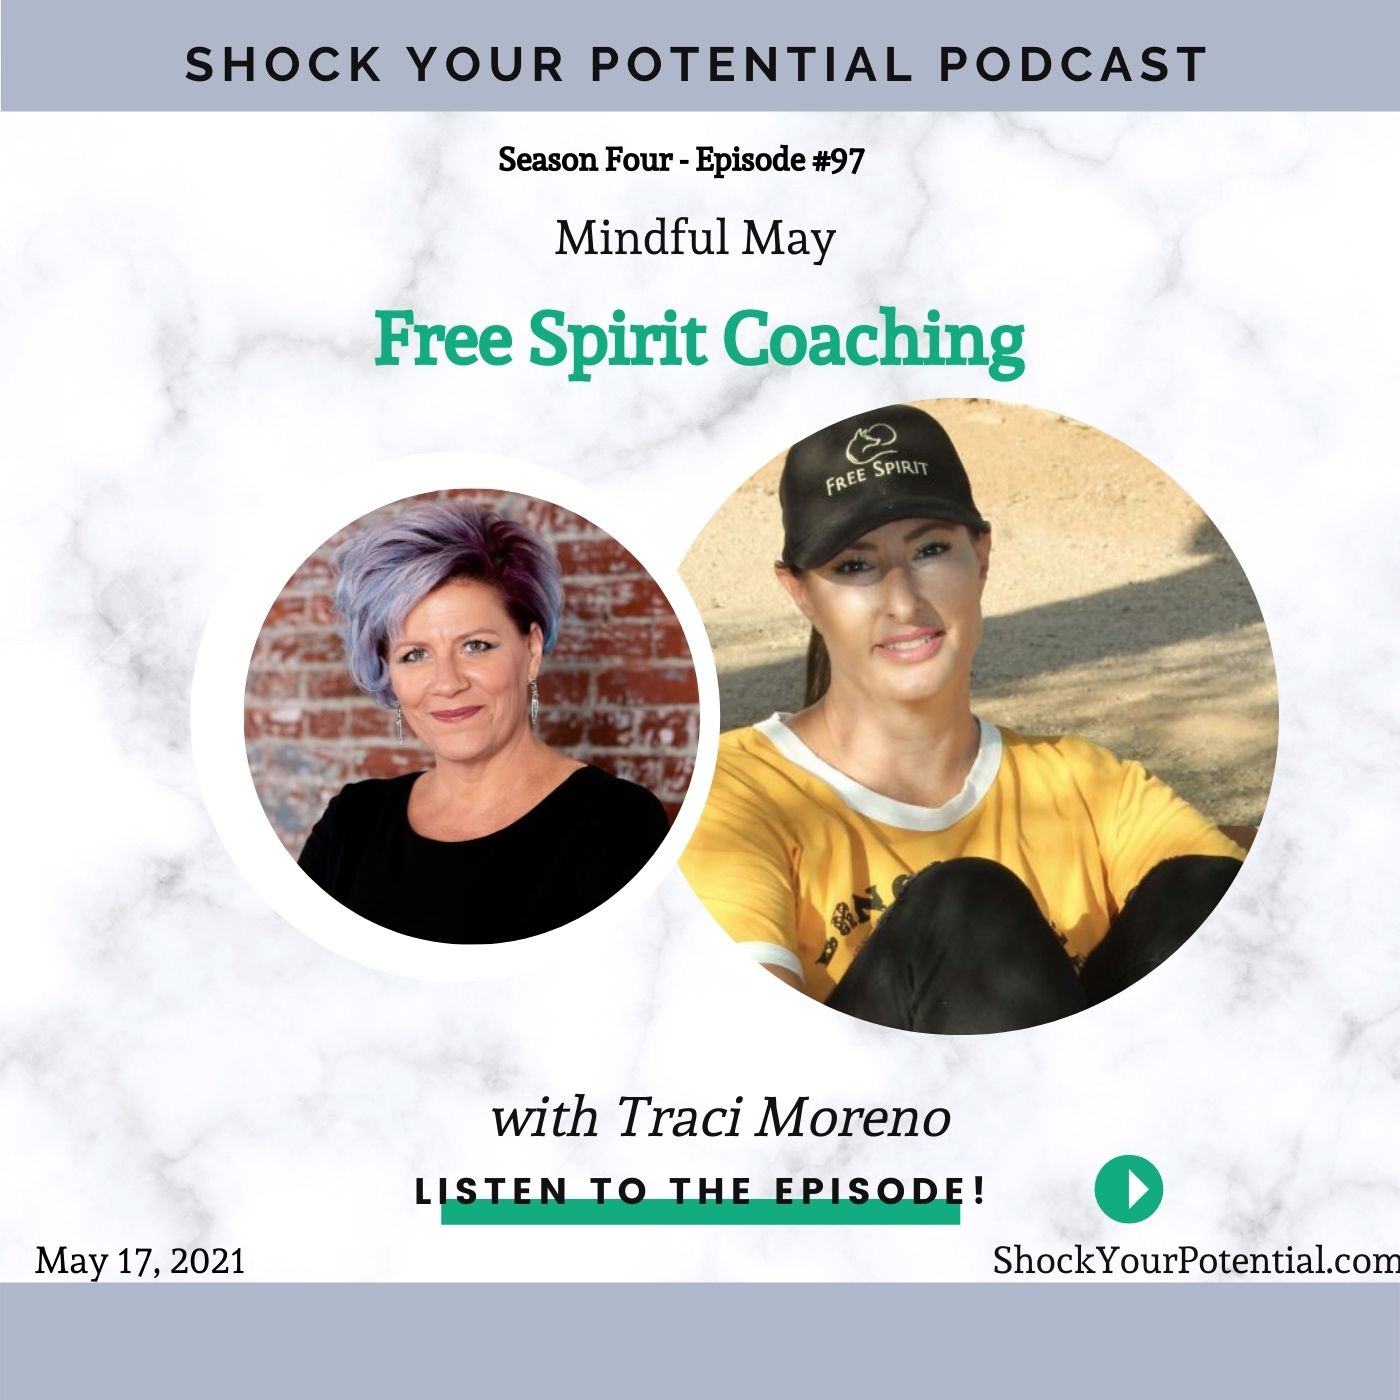 Free Spirit Coaching – Traci Moreno